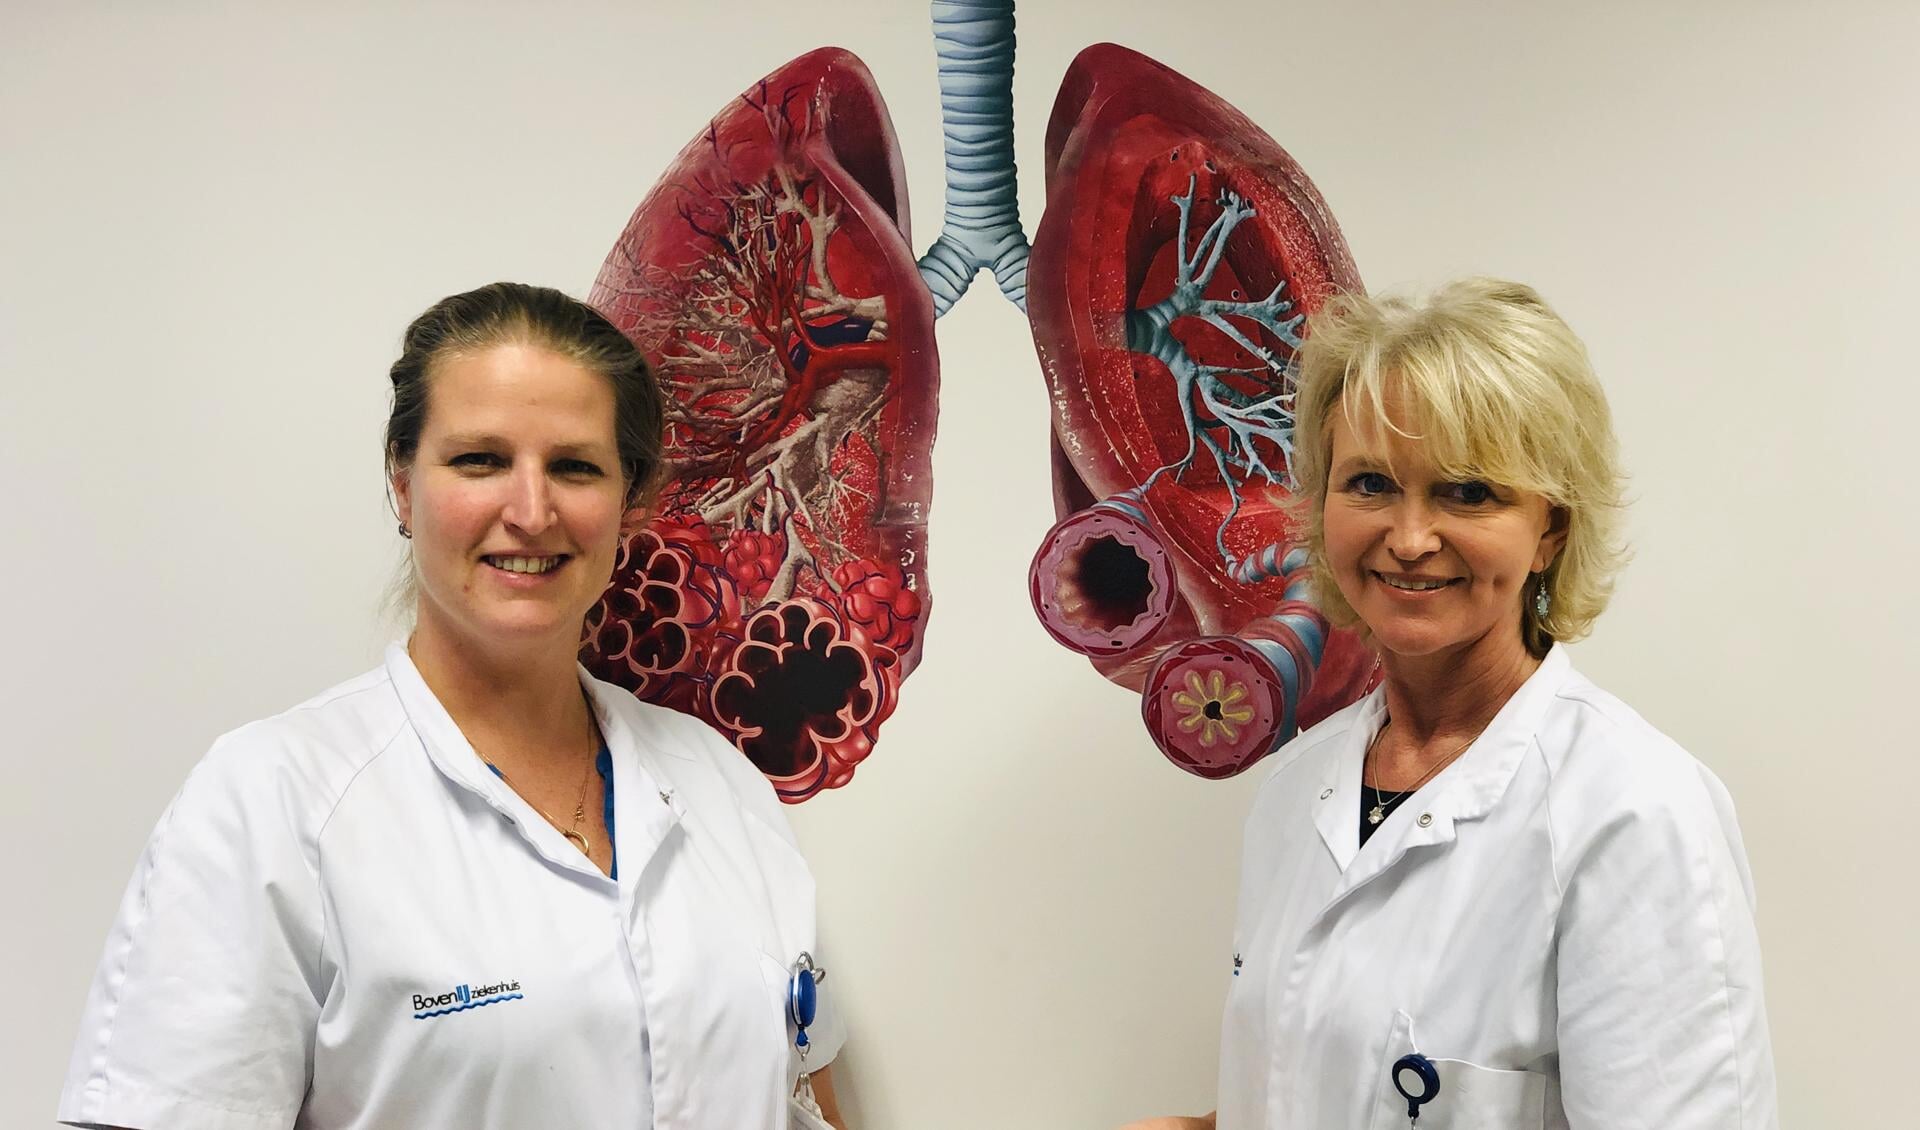 Longverpleegkundige Lieke Spiegelenburg (l) en Suzan Spaans (r) begeleiden mensen die willen stoppen met roken op de rook-stop-poli van het BovenIJ ziekenhuis.